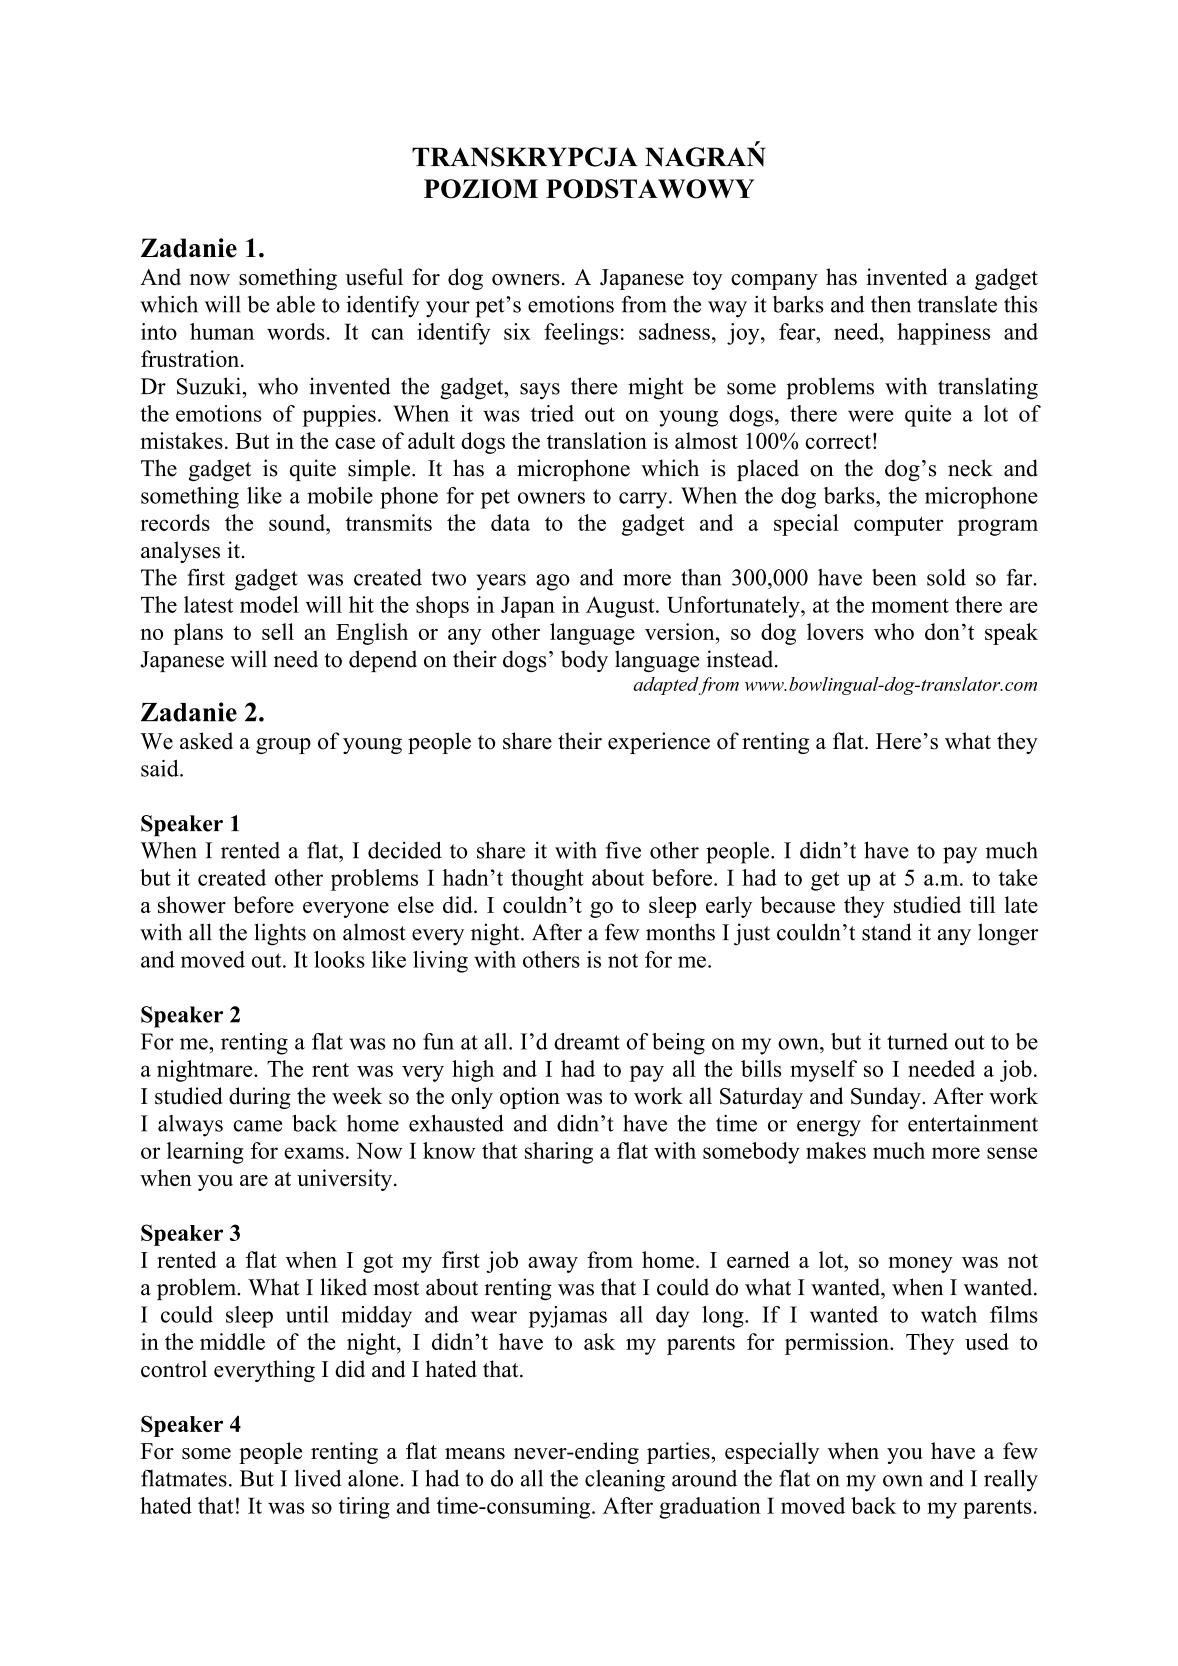 transkrypcja-jezyk-angielski-poziom-podstawowy-matura-2014-str.1